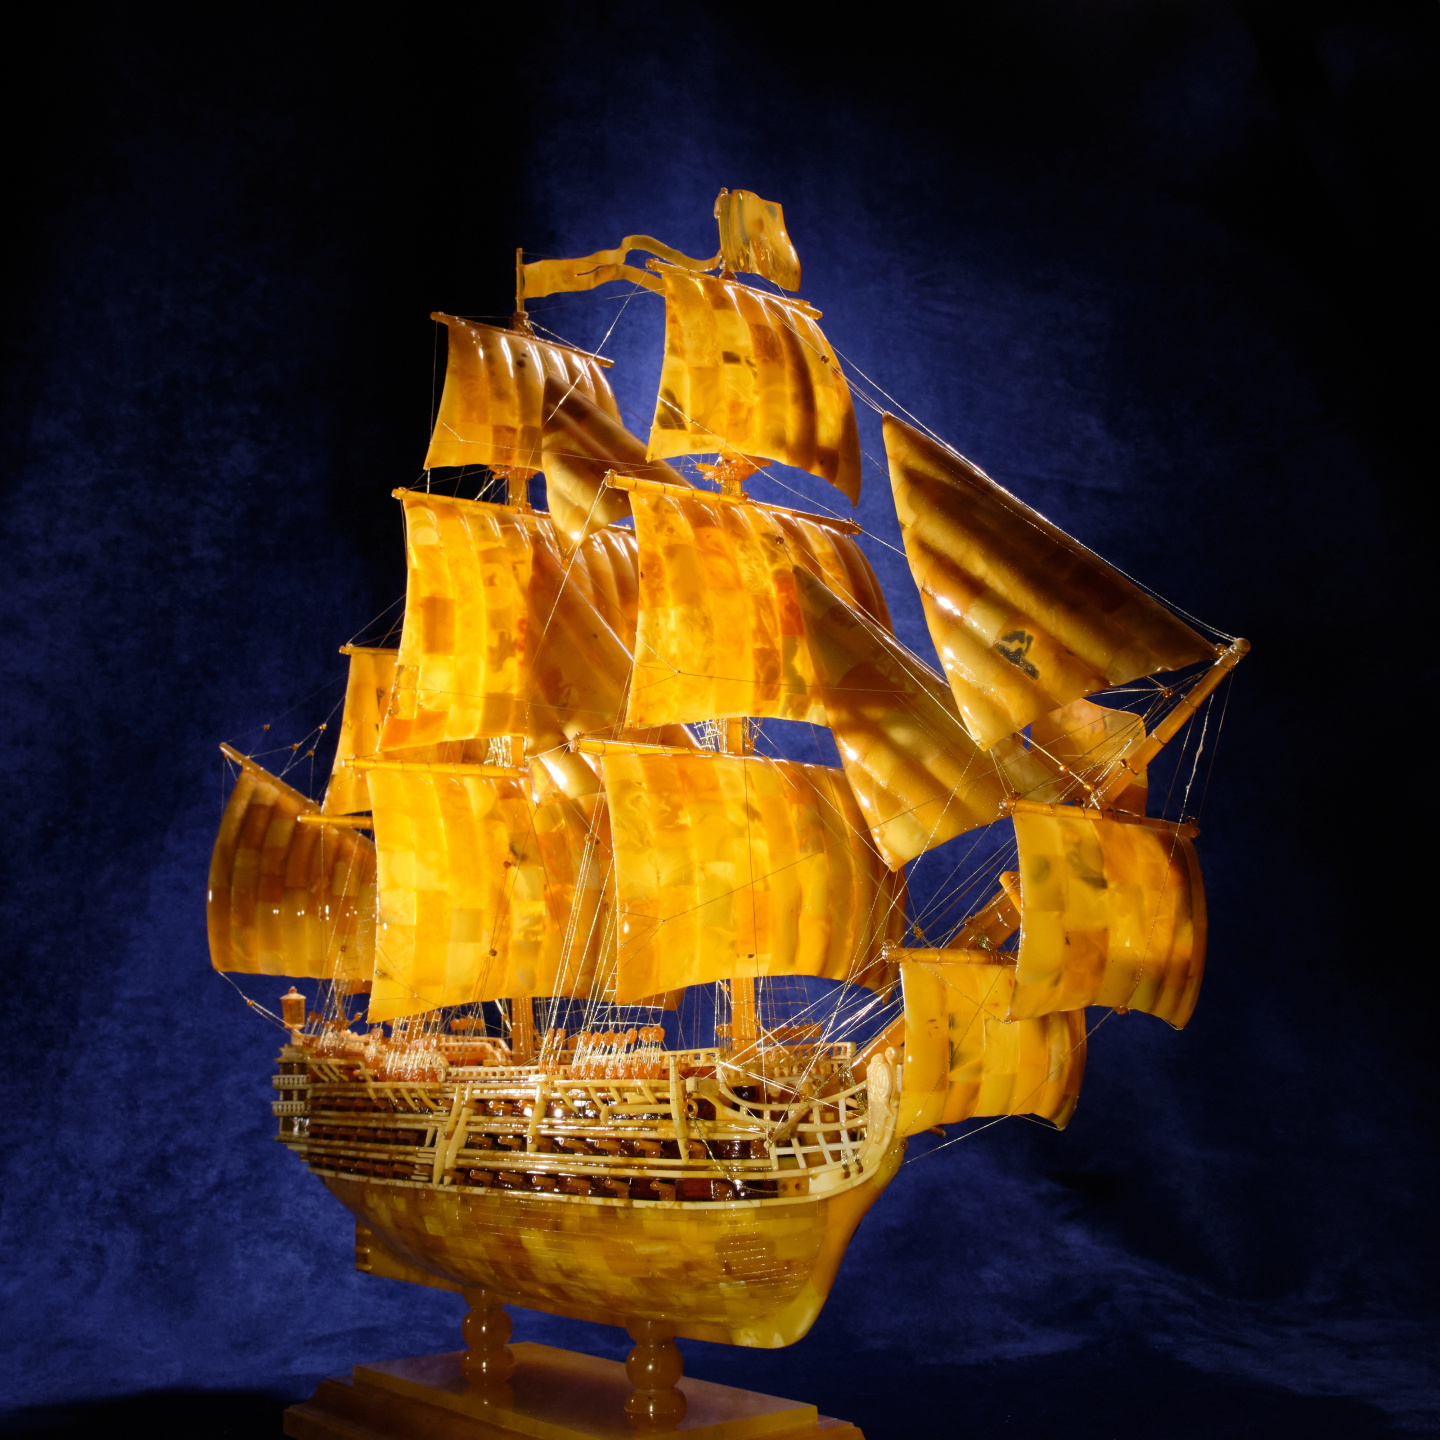 Старинный парусник. Модель корабля из янтаря ✓ — купить старинный парусник.  модель корабля из янтаря в мастерской янтаря Baltamber.com